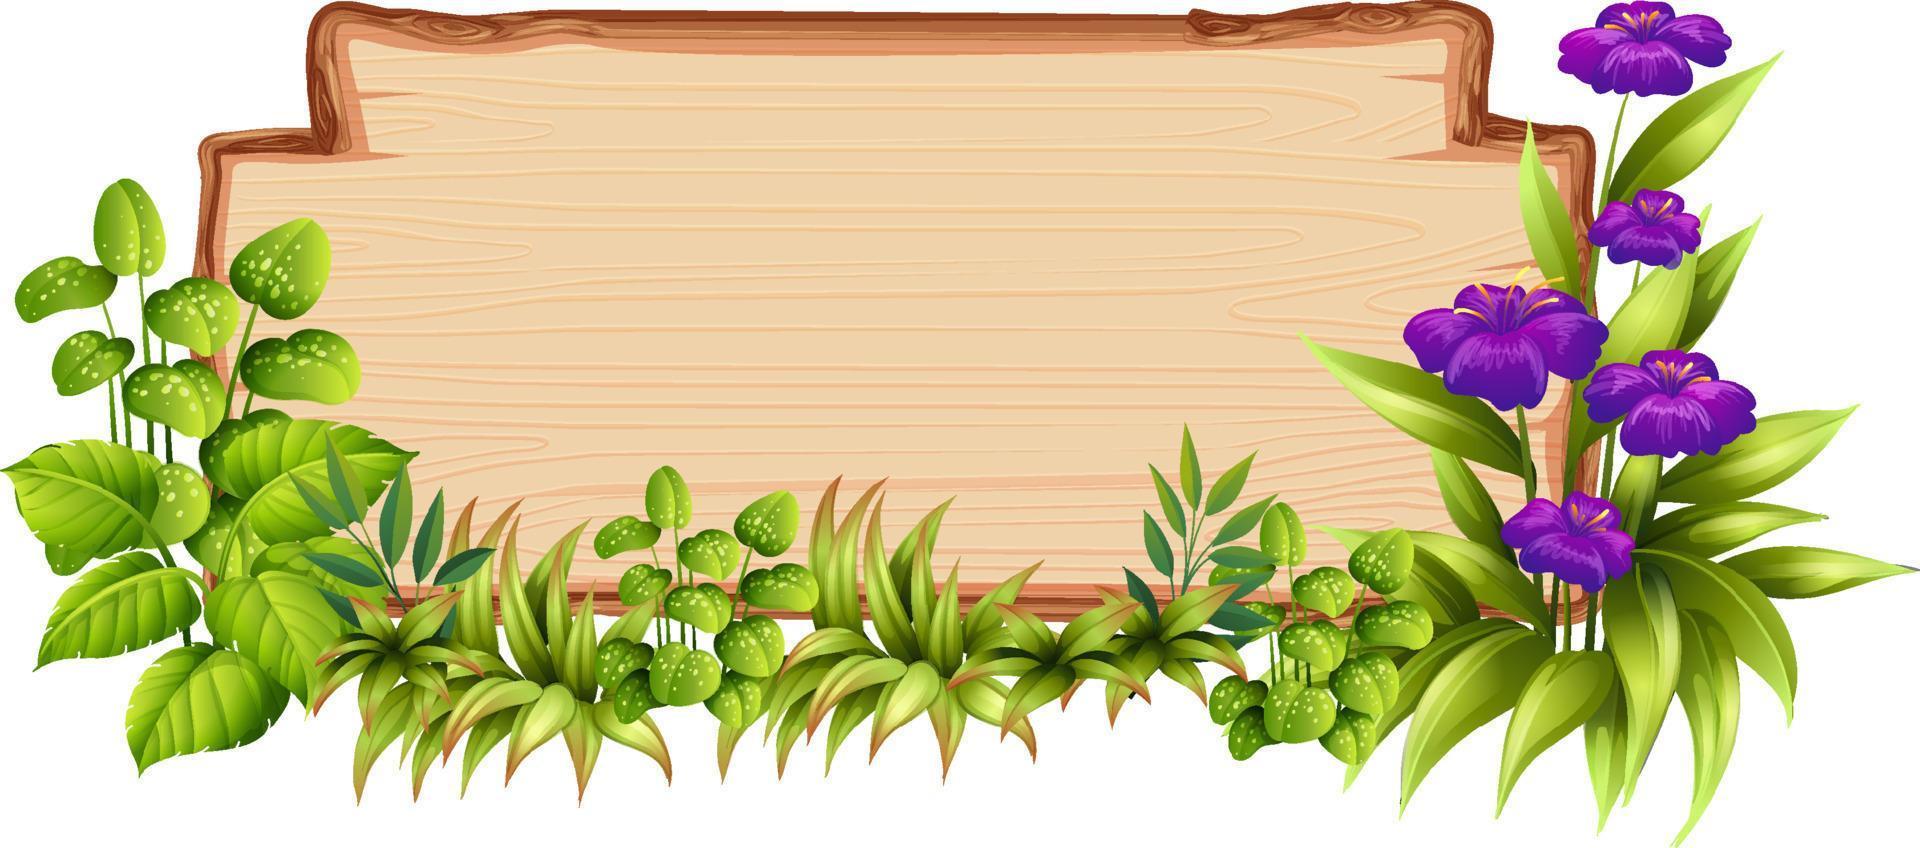 modèle de planche de bois avec des feuilles de la nature vecteur